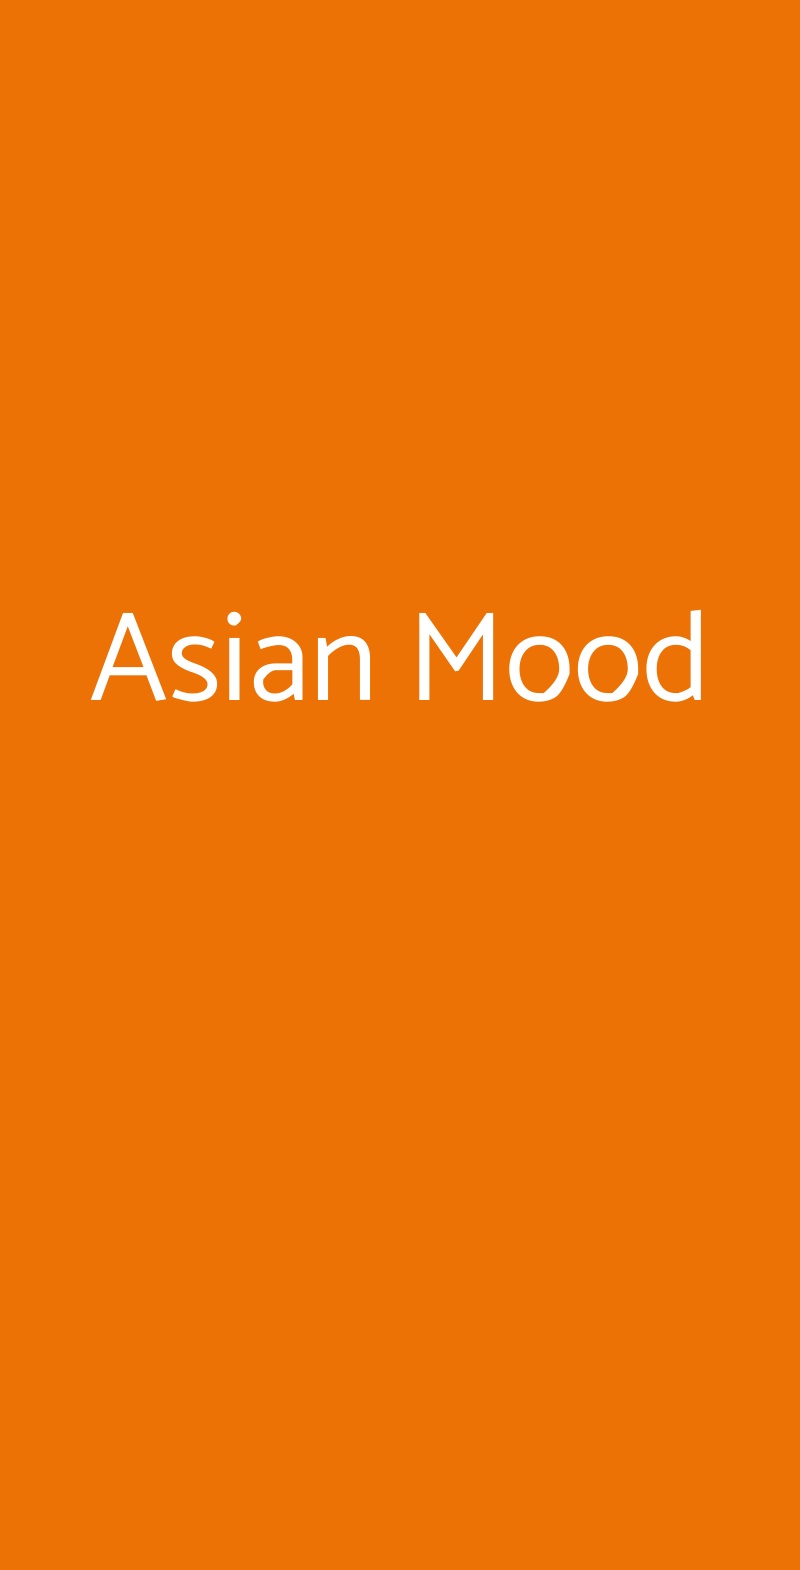 Asian Mood Milano menù 1 pagina